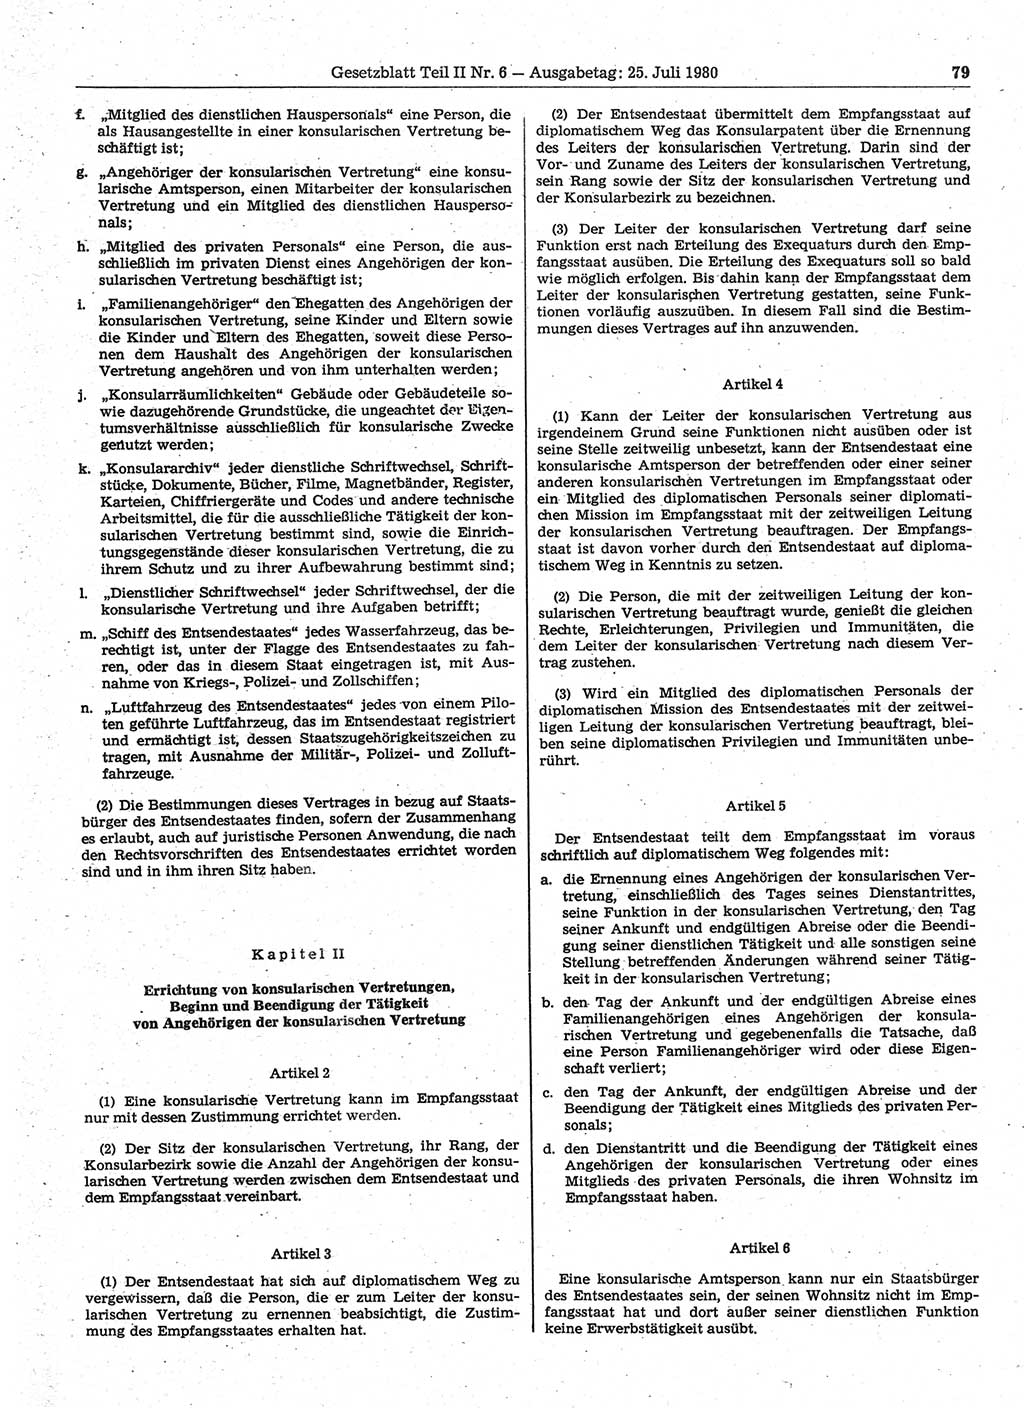 Gesetzblatt (GBl.) der Deutschen Demokratischen Republik (DDR) Teil ⅠⅠ 1980, Seite 79 (GBl. DDR ⅠⅠ 1980, S. 79)